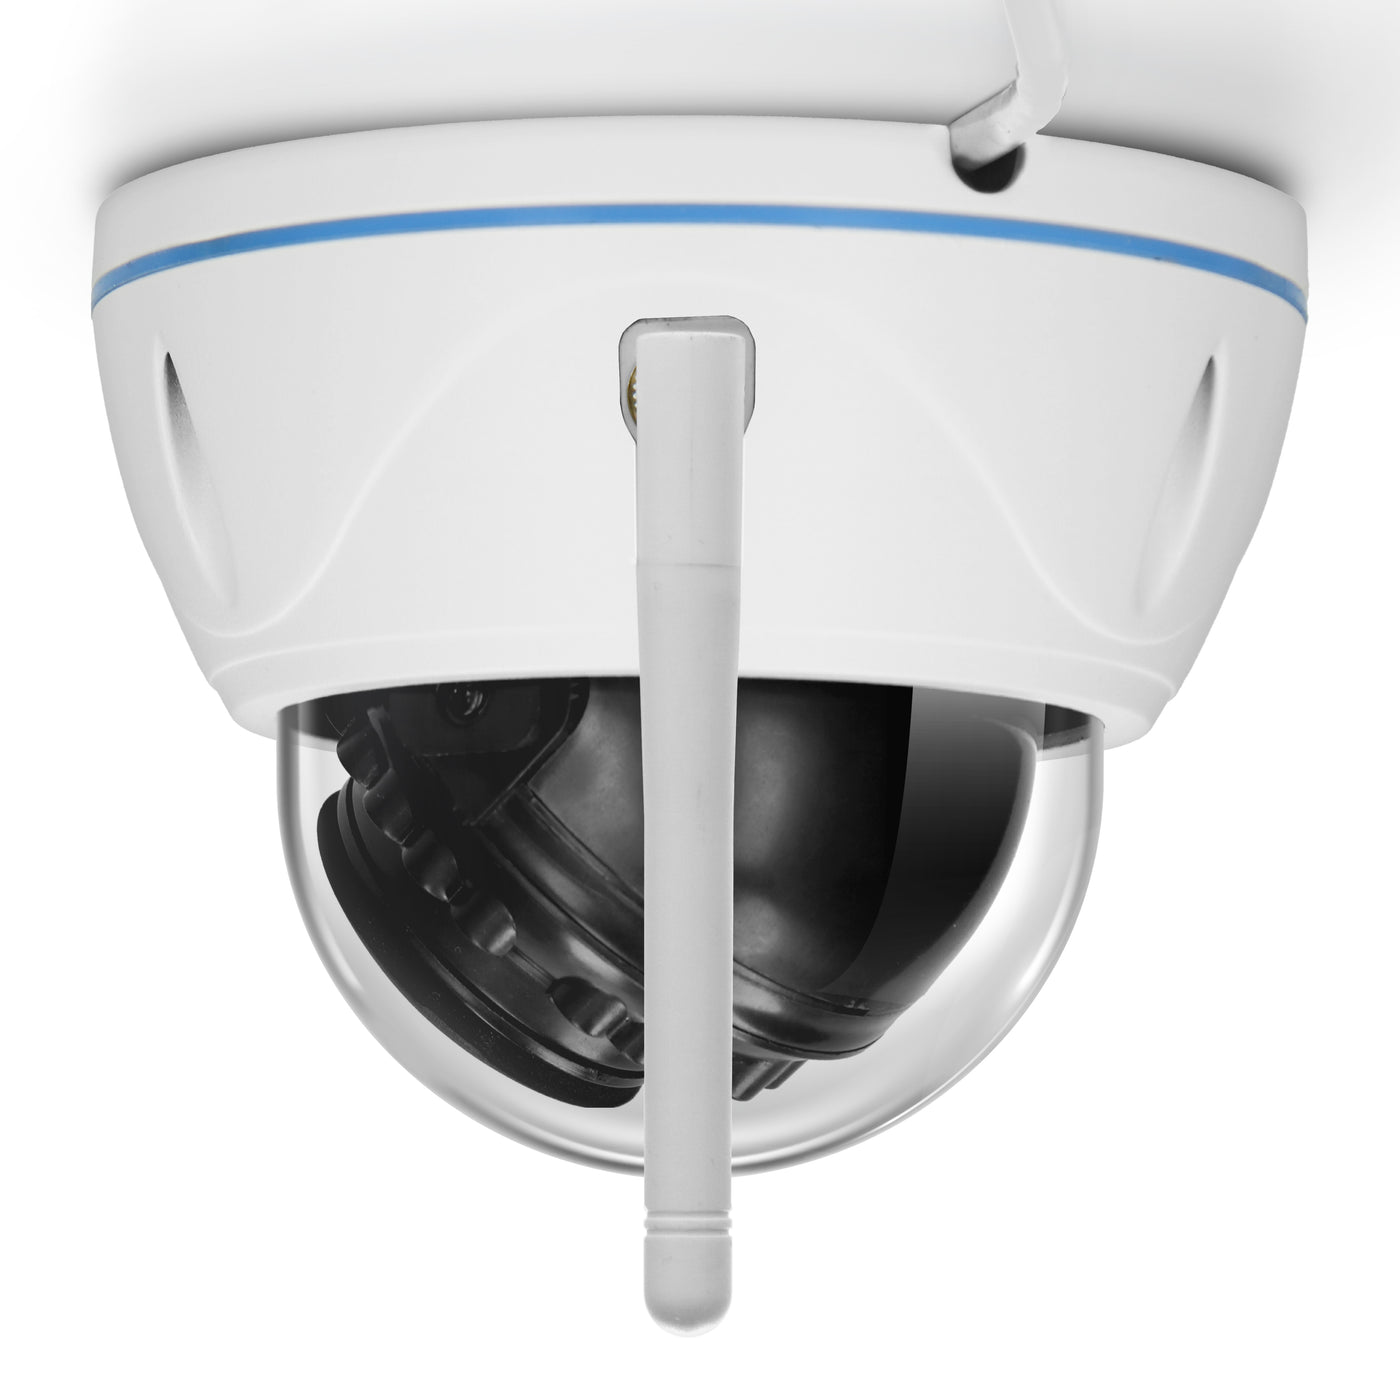 Alecto DVC136IP - Outdoor Wi-Fi dome camera - White